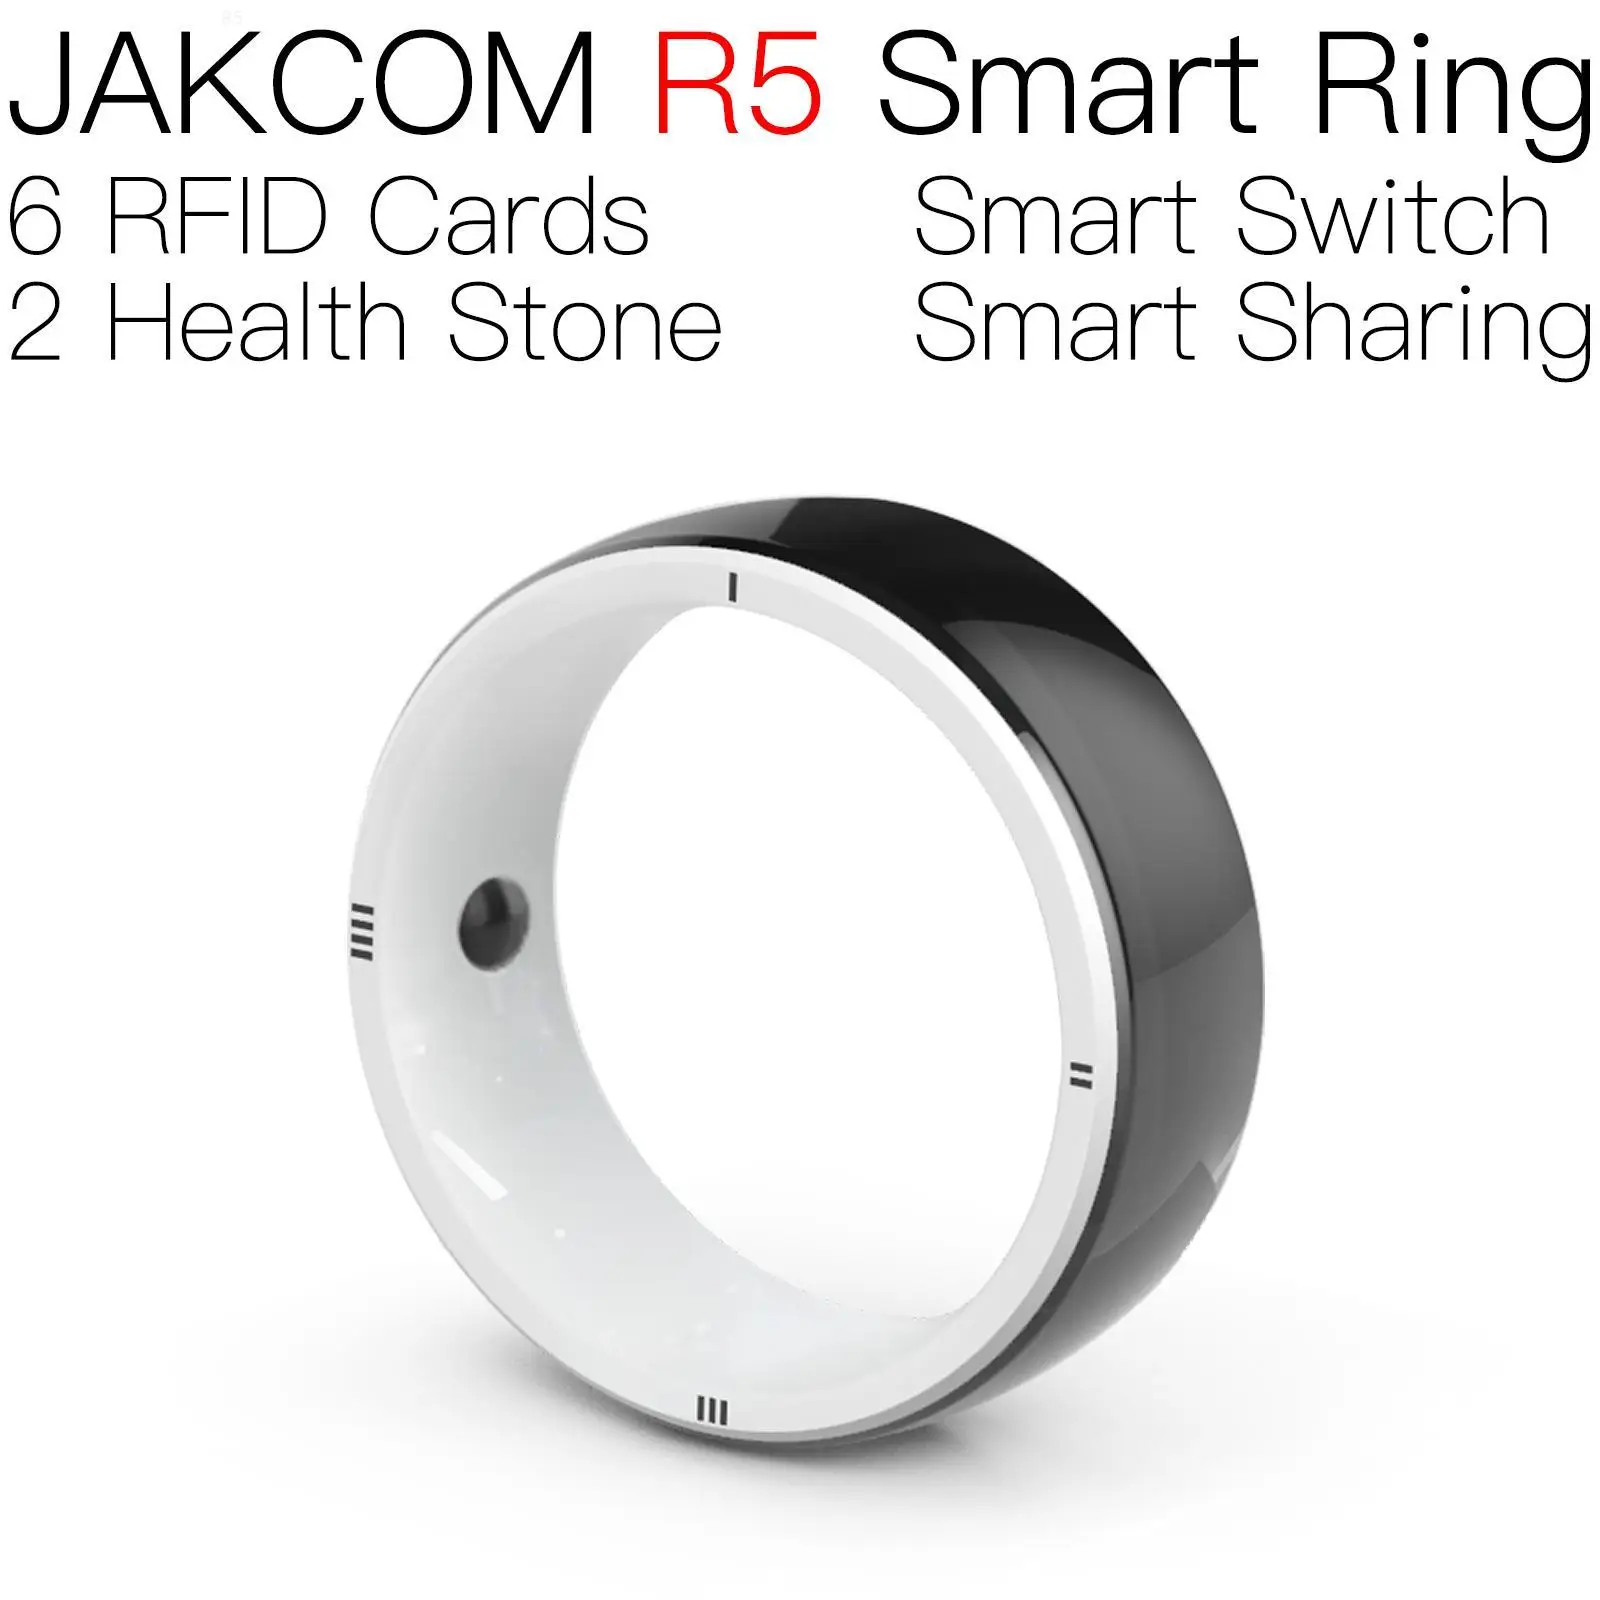 JAKCOM R5 Smart Ring Лучший подарок с визитной карточкой nfx pet chip reader 1k золотые кольца Индия чипсет nfc rfid метка применяется t5577 fob